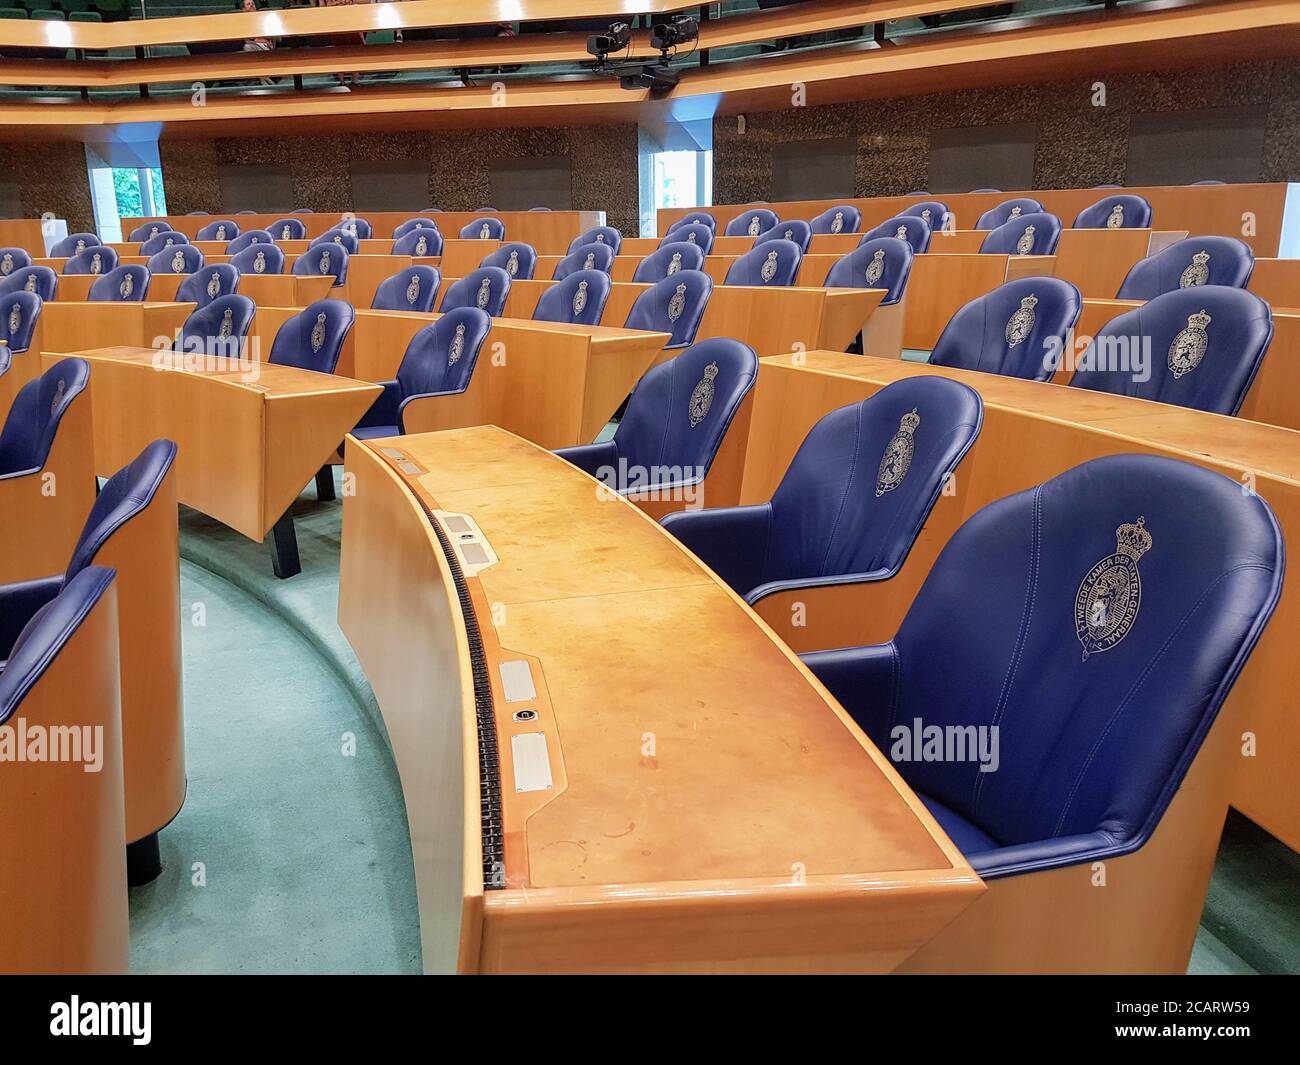 DEN HAAG, NIEDERLANDE - 20. Jul 2019: Repräsentantenhaus der Niederlande. Das niederländische Parlament heißt Generalstaaten. Stockfoto